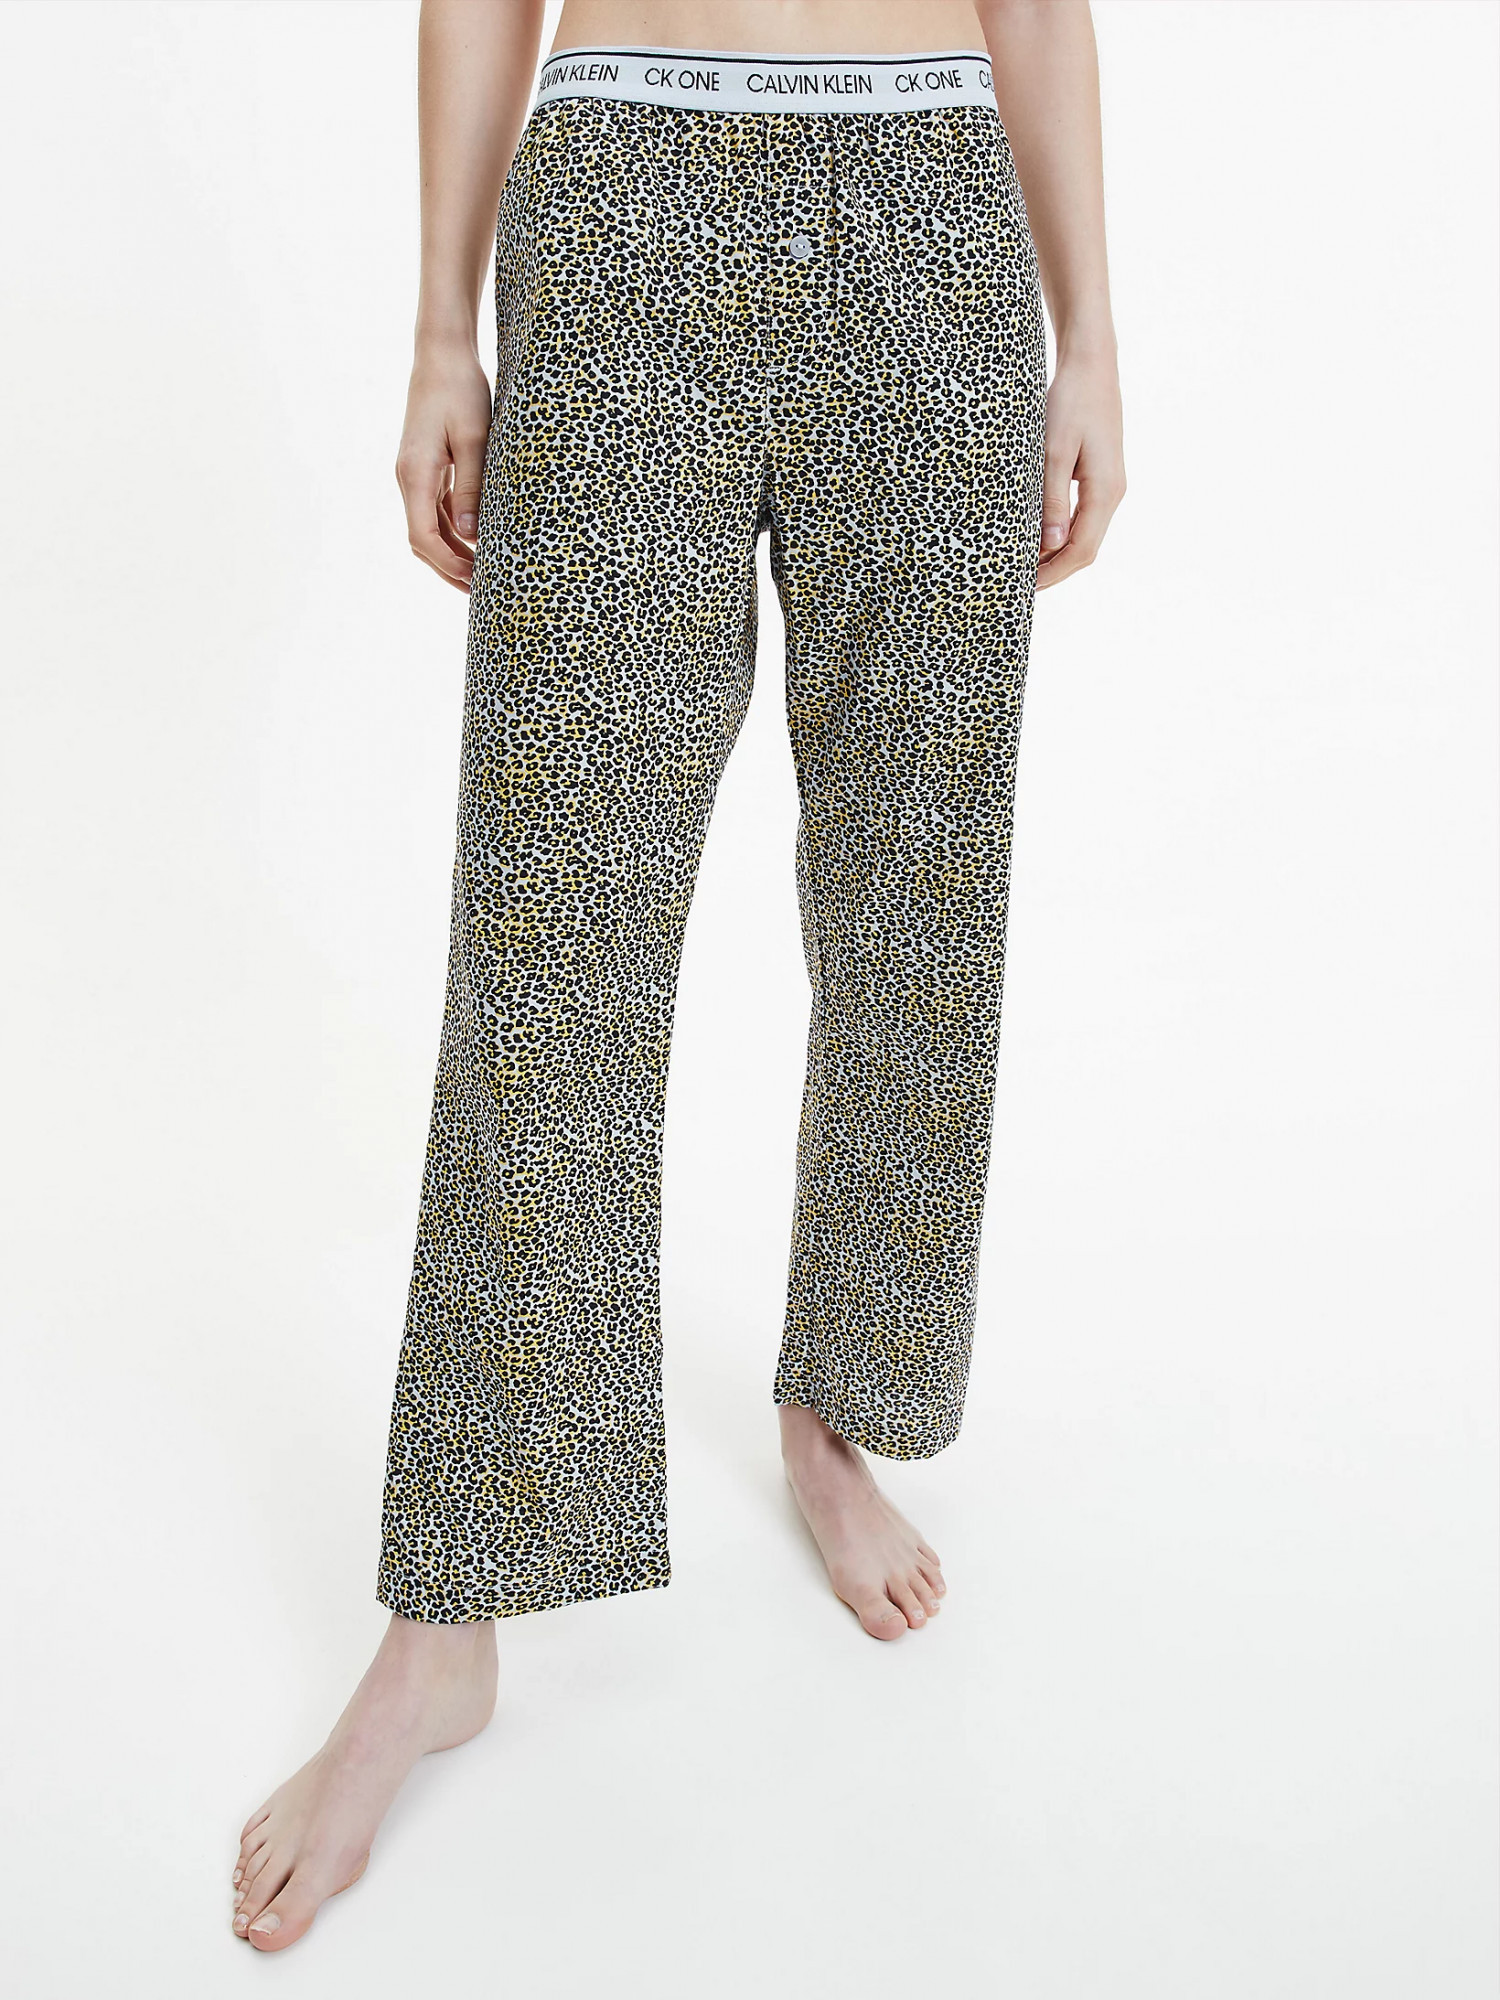 Dámské pyžamové kalhoty QS6433E - V4L Fialová se zvířecím vzorem - Calvin Klein L fialový vzor